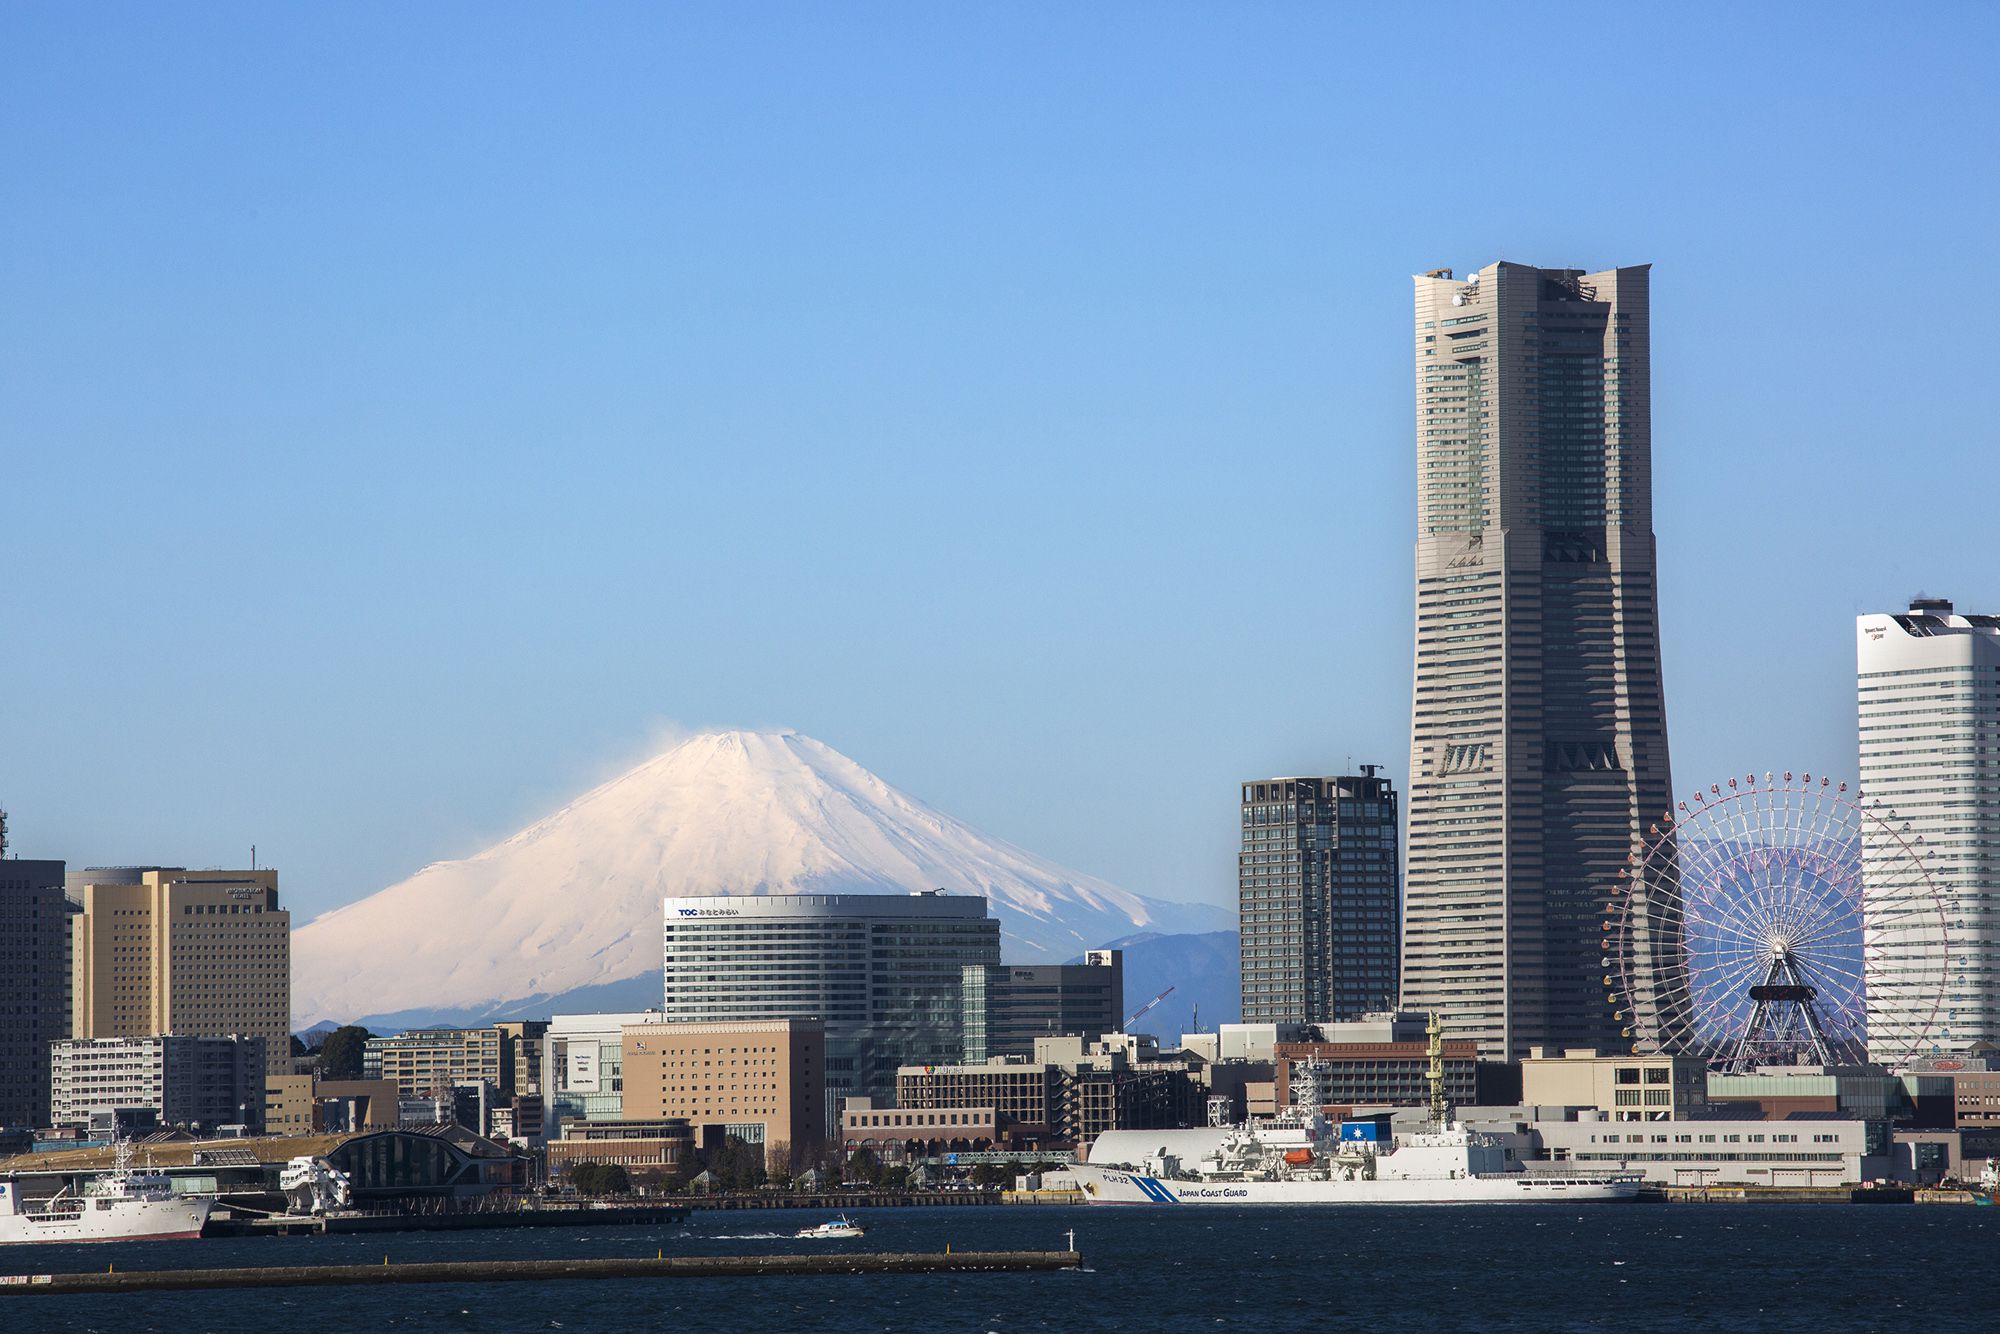 從航行在東京灣上的船內望向横濱港岸。披上銀裝的富士山也別有一番魅力。